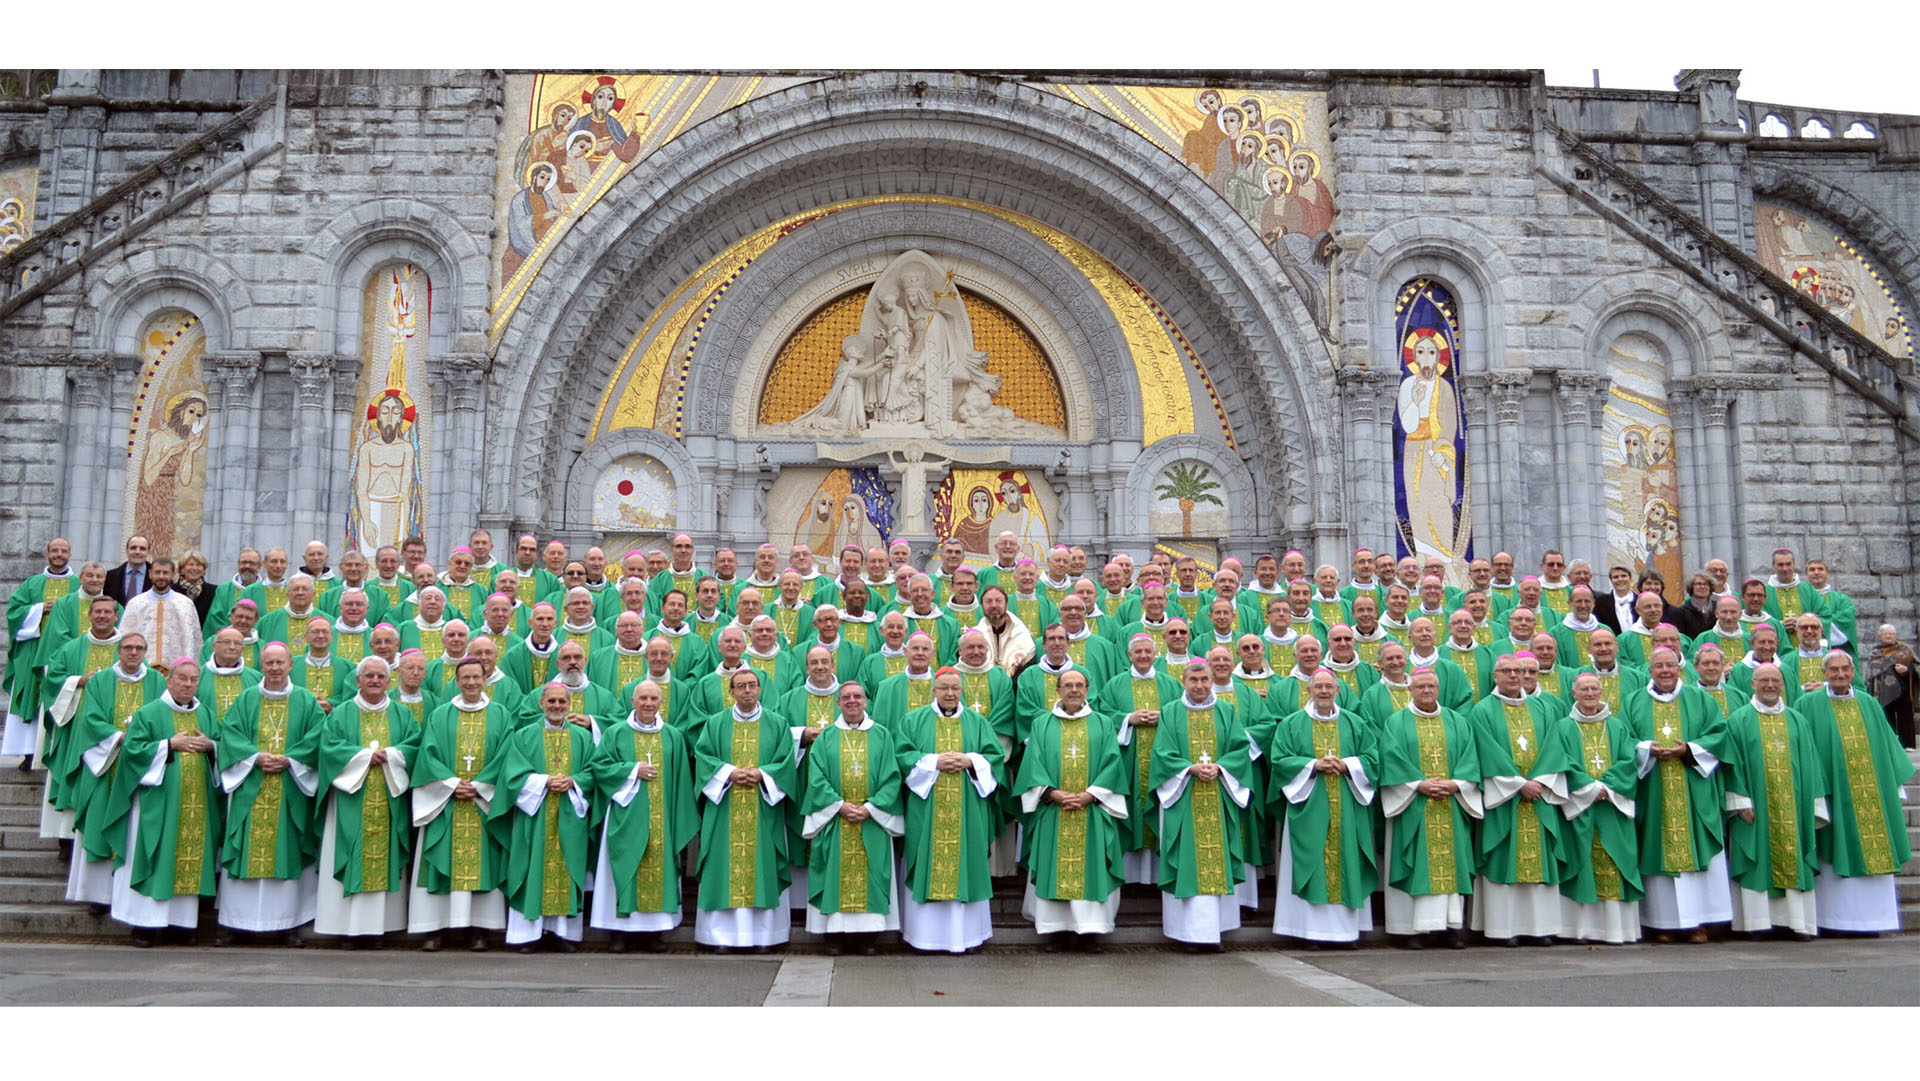 Près de 120 évêques prennent part à l'Assemblée plénière de printemps de la CEF du 2 au 5 avril 2019 à Lourdes. | © CEF/archives